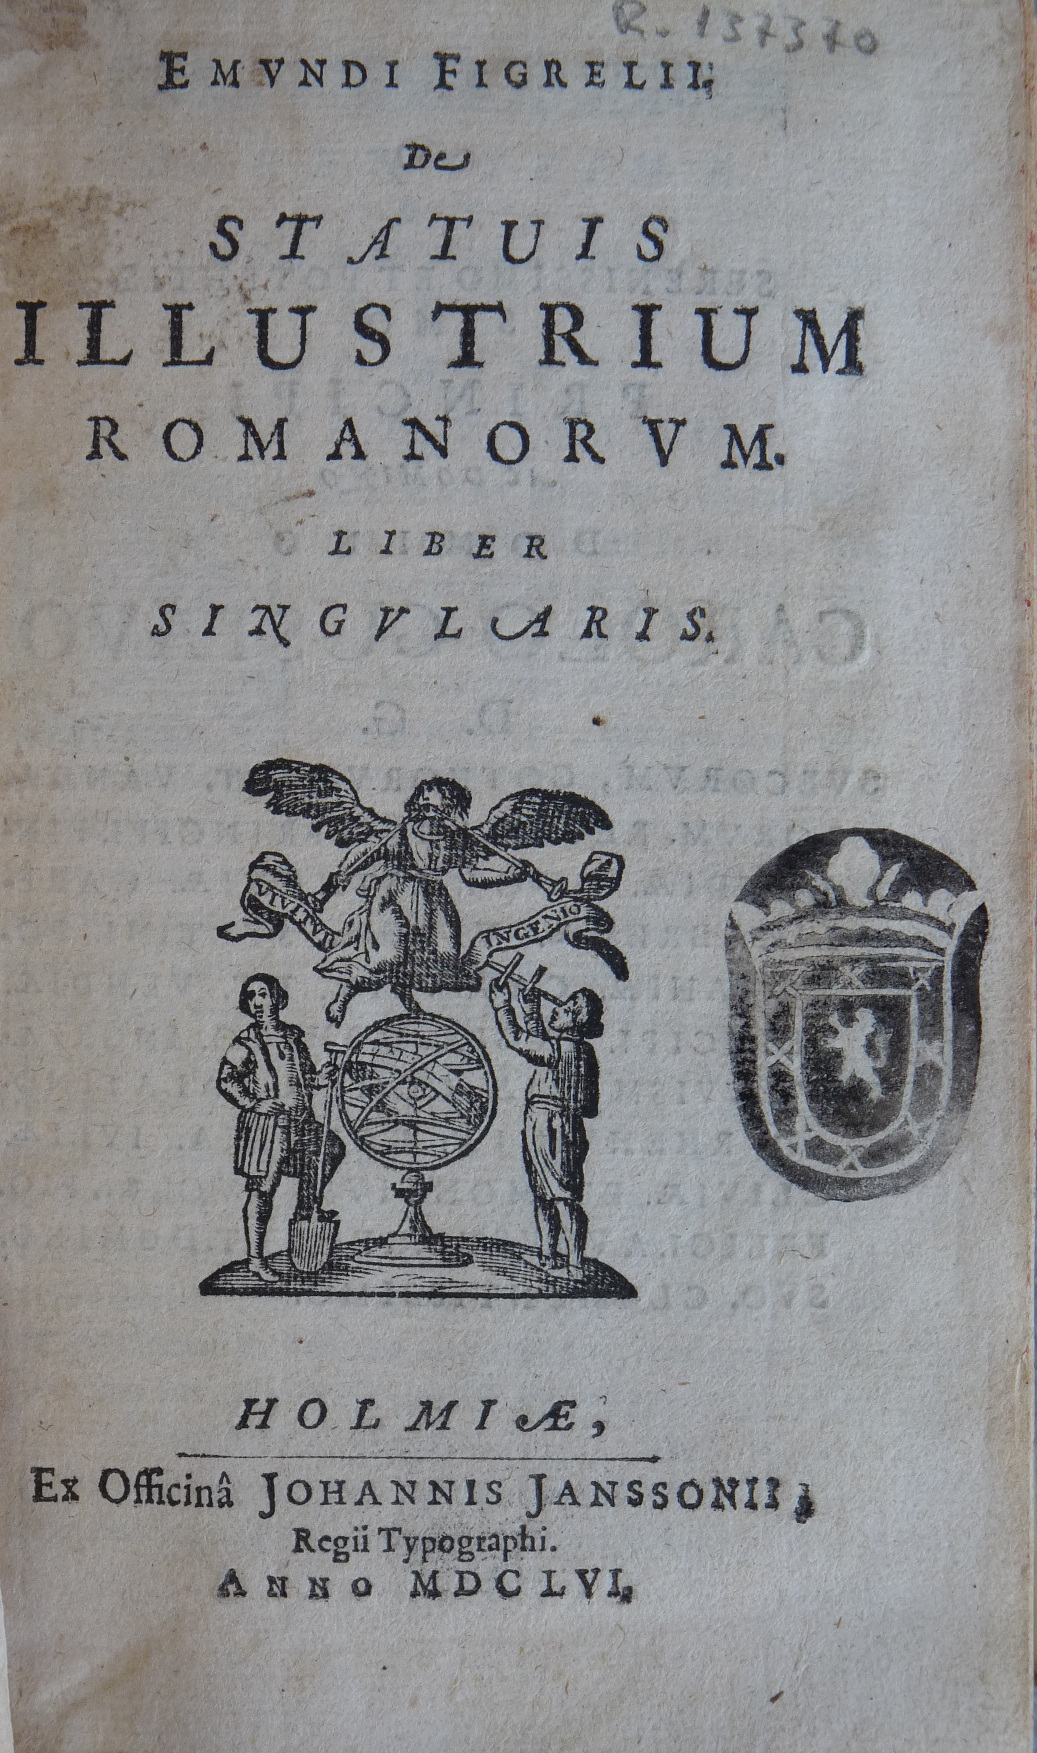 De statuis illustrium romanorum. De antiquorum torquibus syntagma, 1656